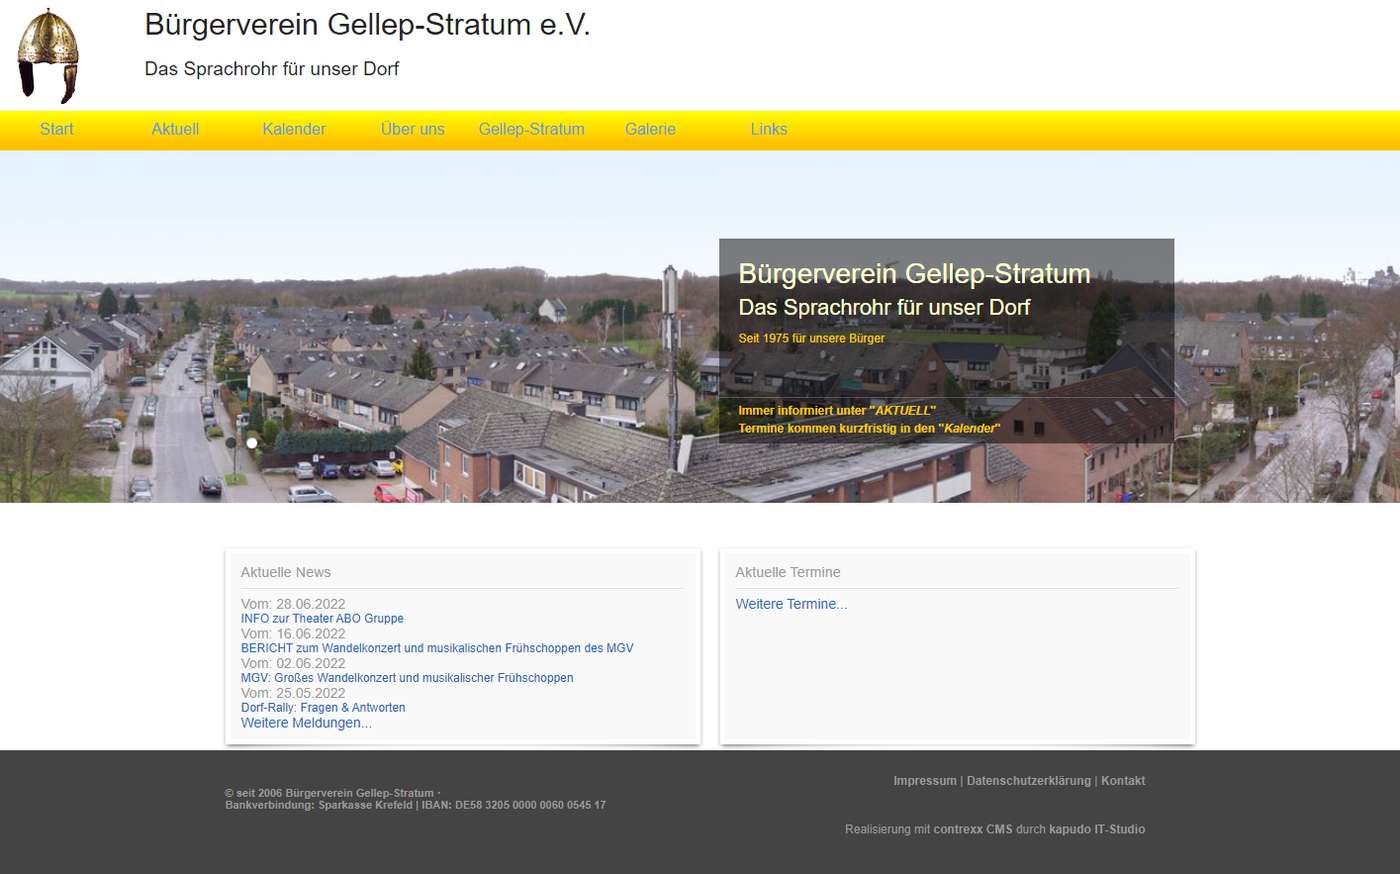 03.06.2012: Screenshot der neuen Webseite des Bürgerveein Gellep-Stratum 1975 e.V.